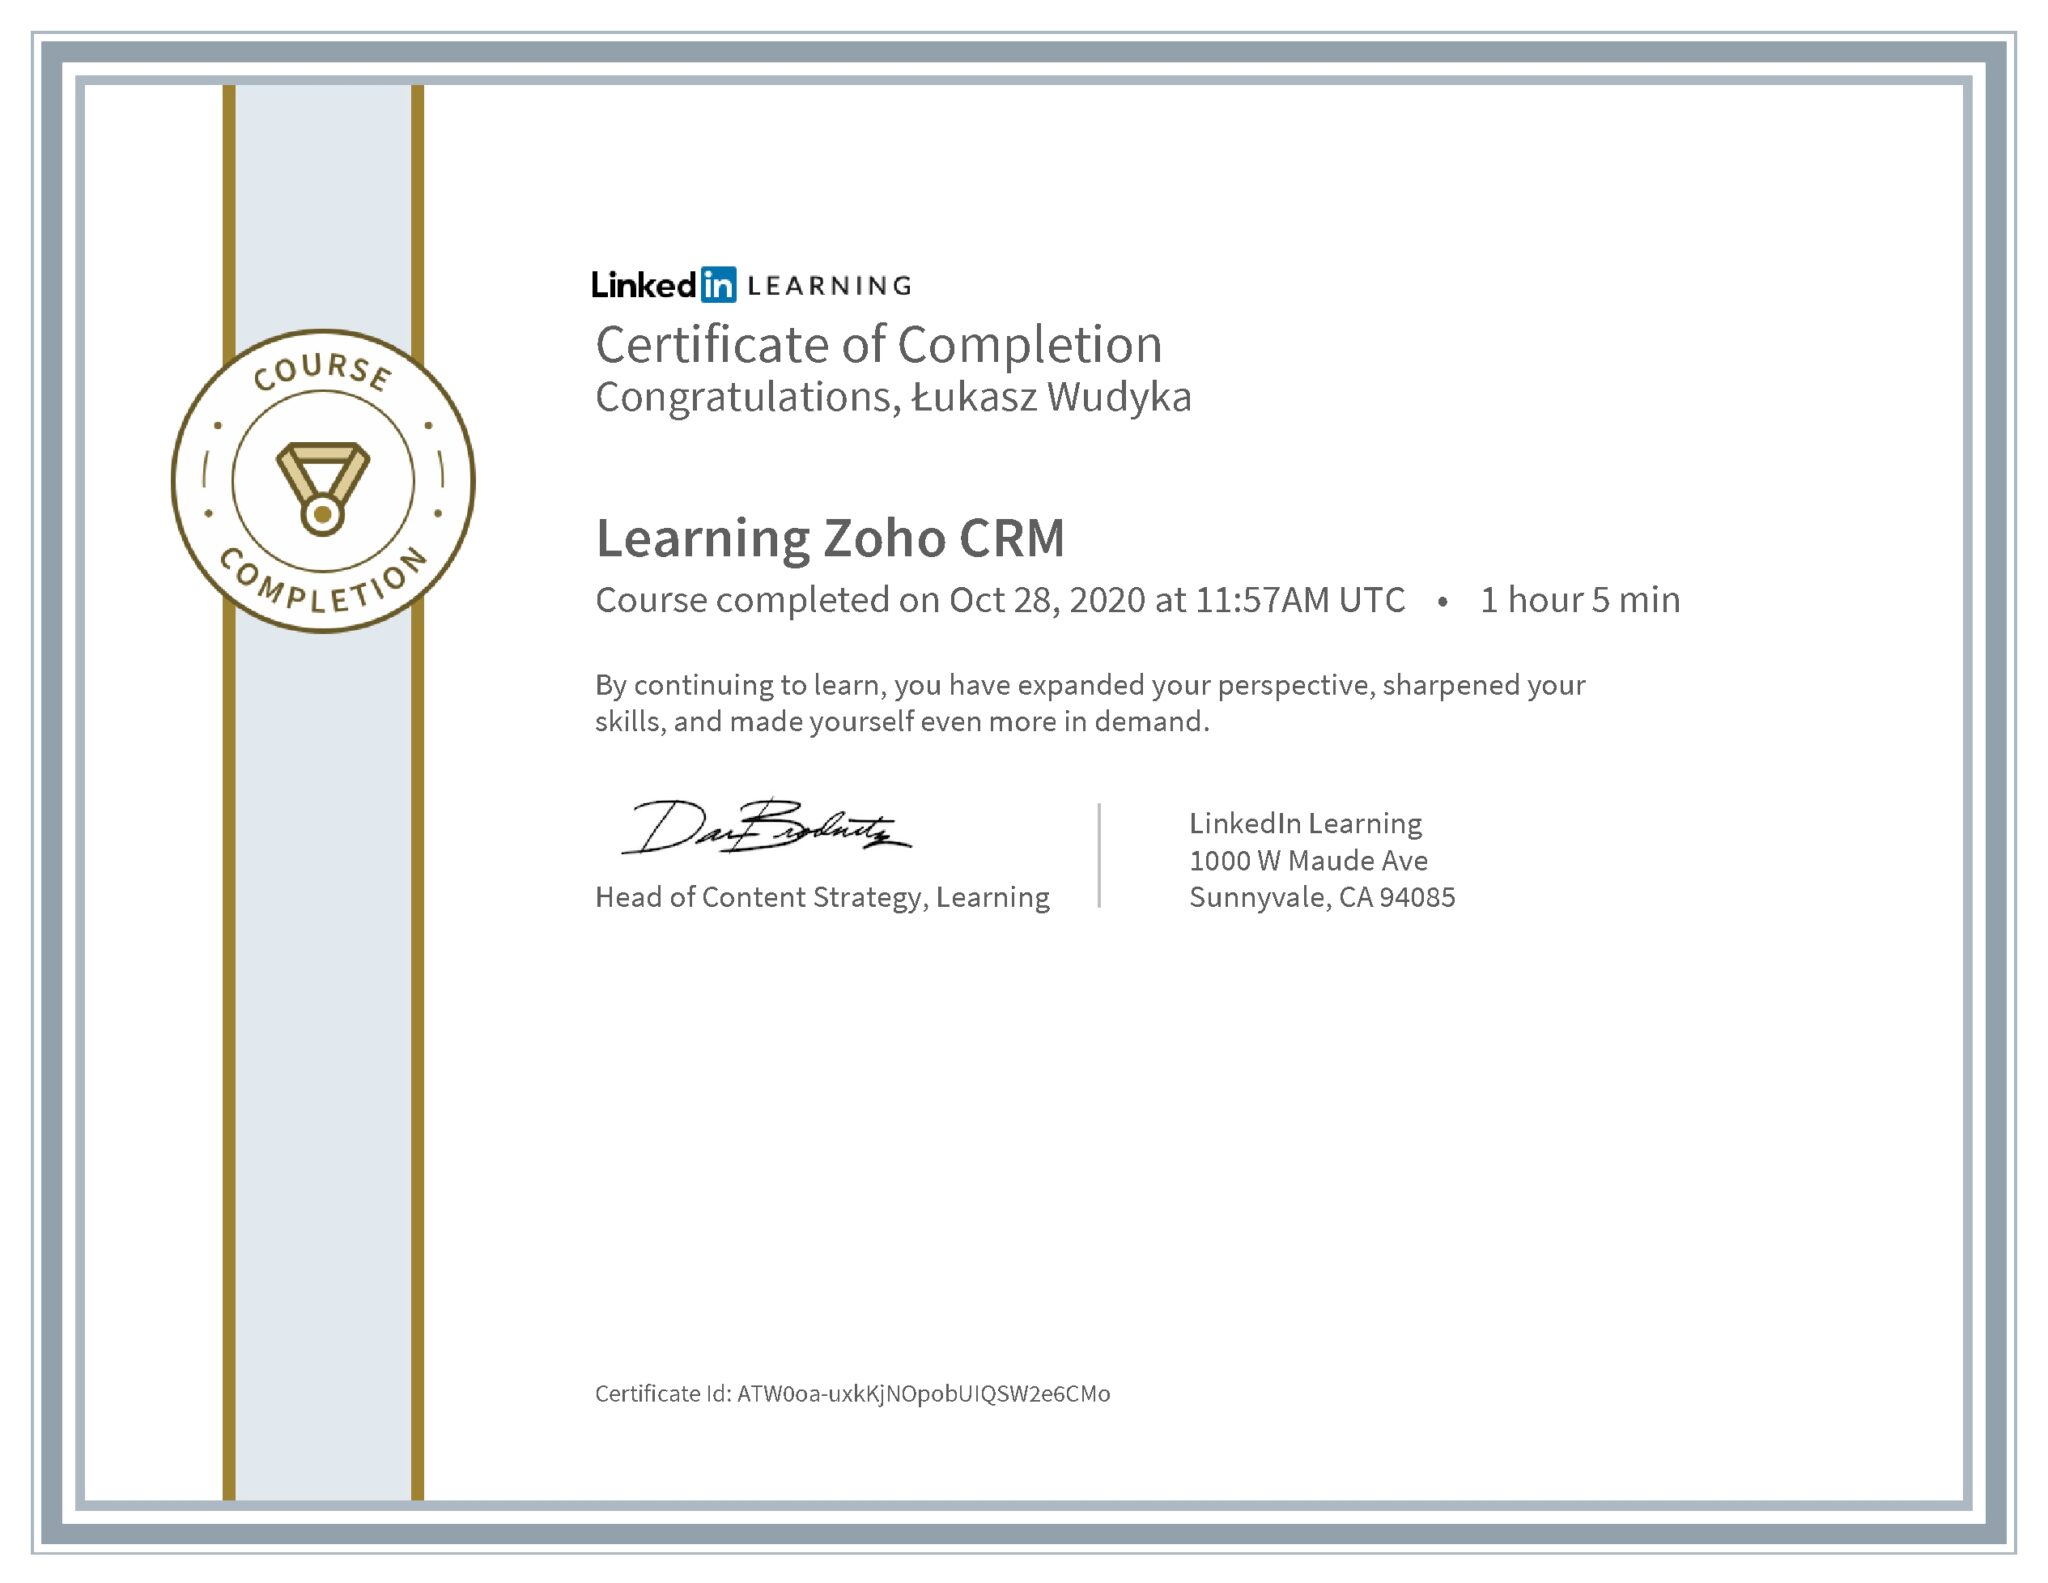 Łukasz Wudyka certyfikat LinkedIn Learning Zoho CRM